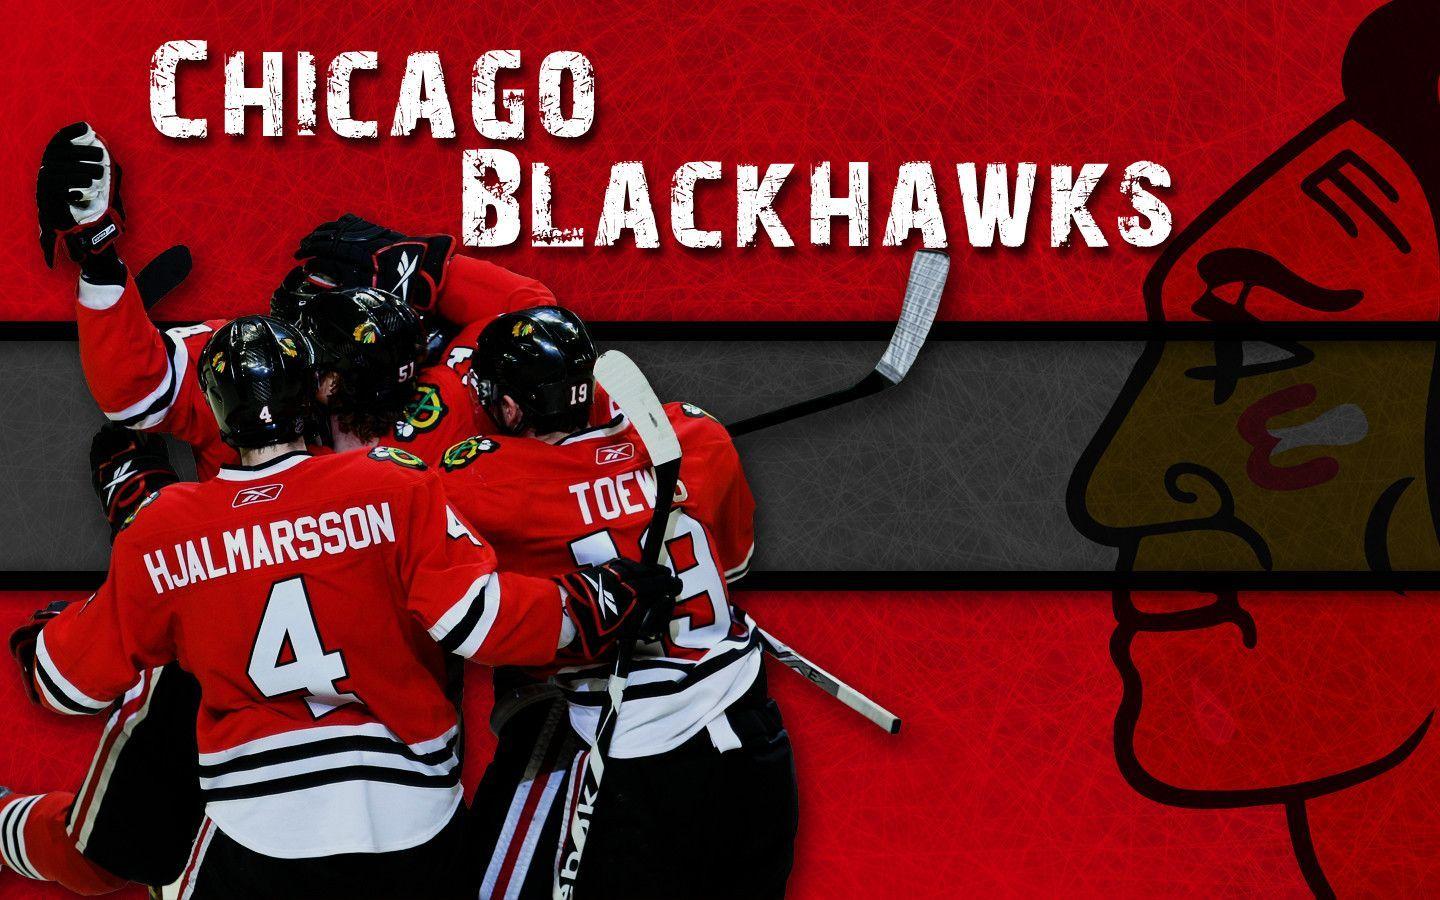 Chicago Blackhawks wallpaper. Chicago Blackhawks background